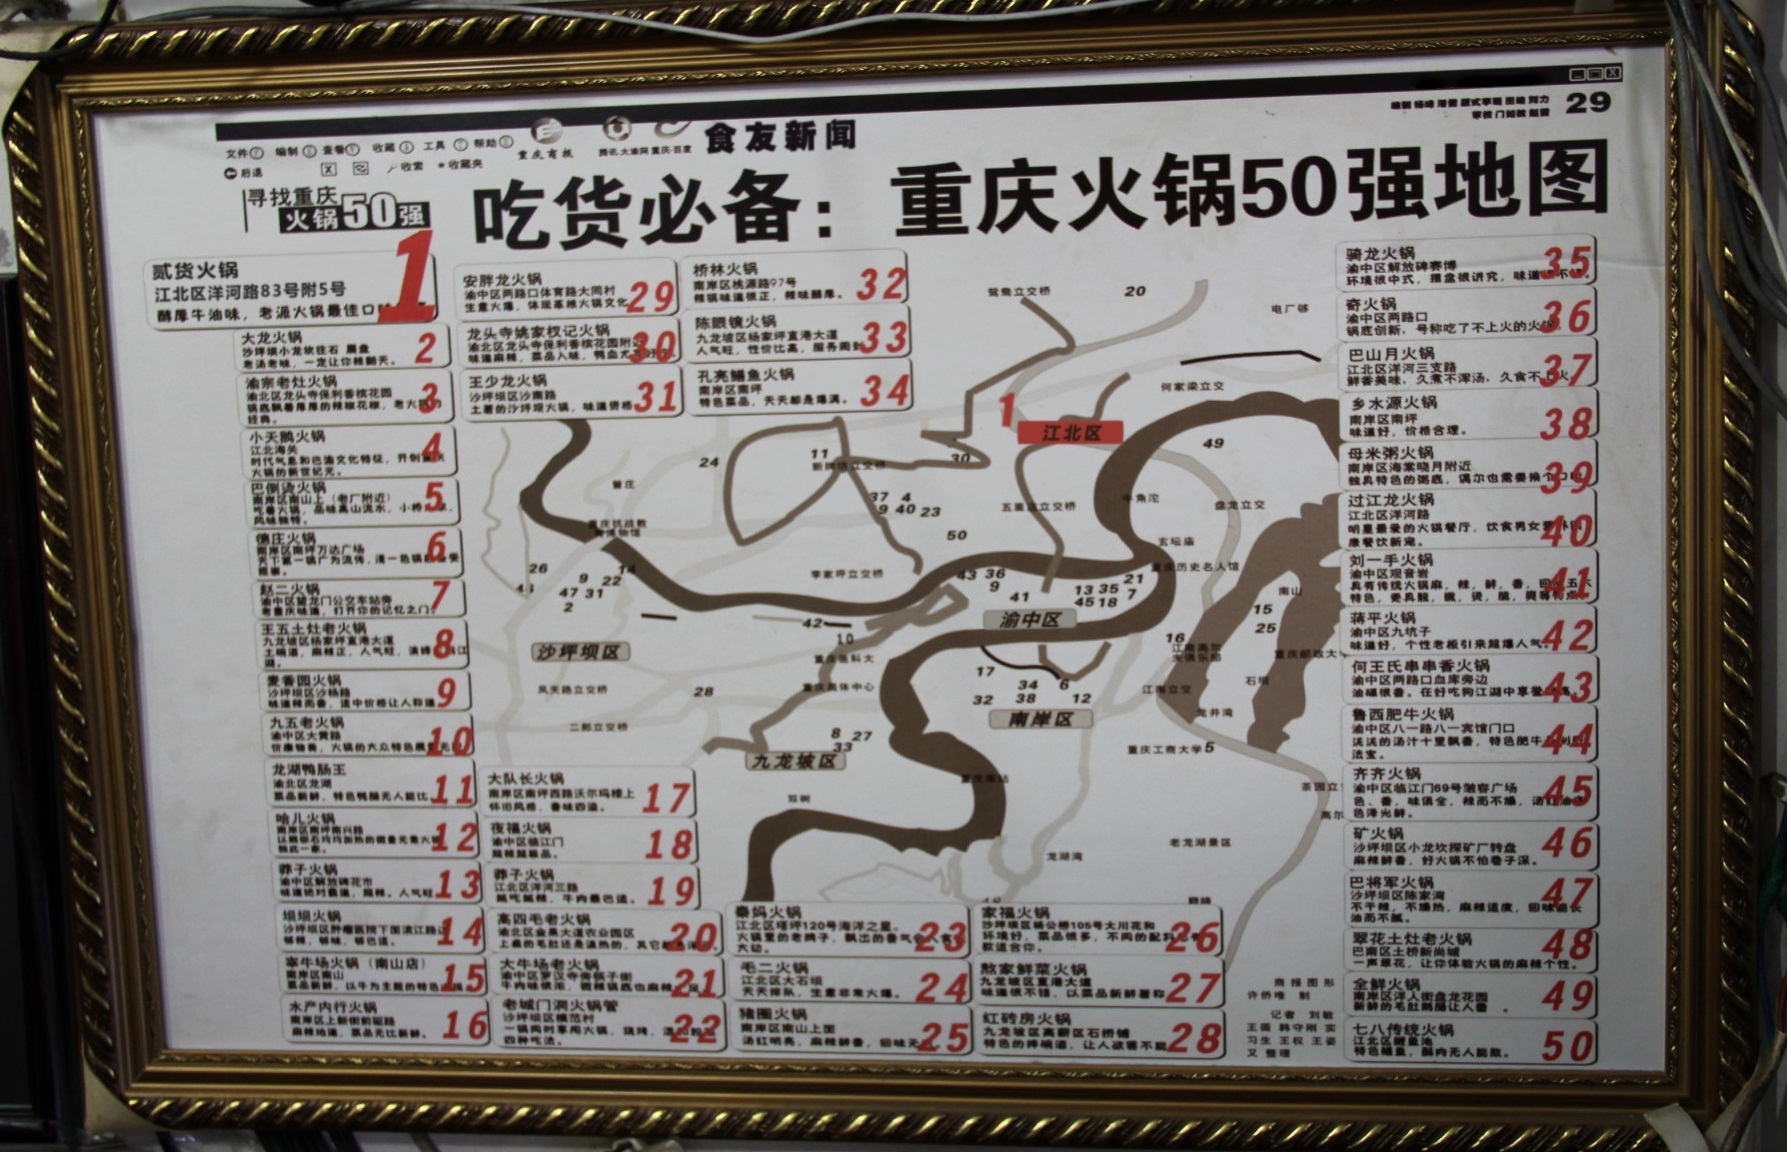 火锅店里有个"重庆火锅50强地图",第一名就是"贰货老火锅"